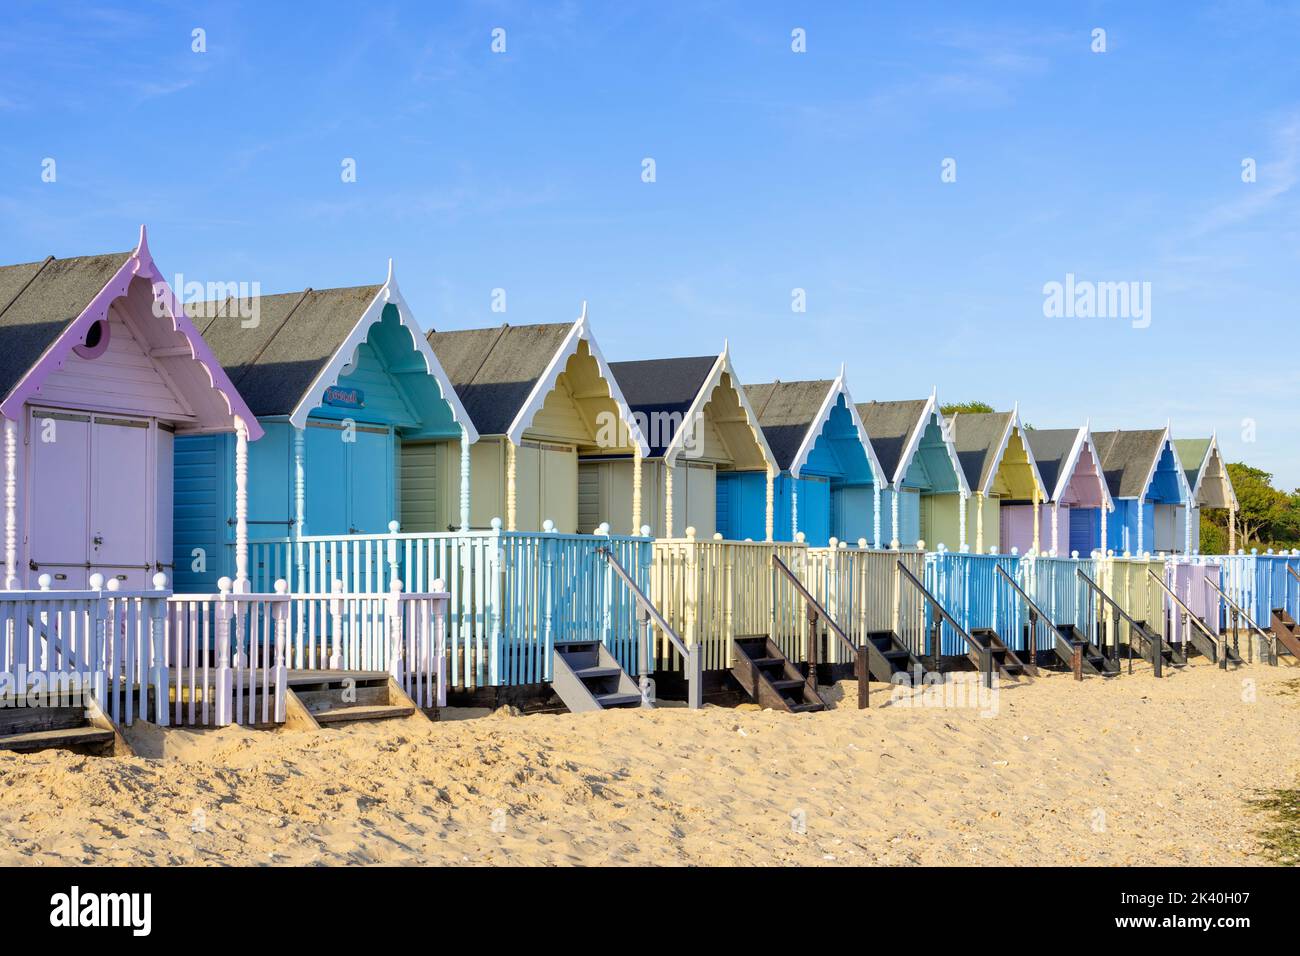 Cabanes de plage de Mersea Island ligne de cabanes de plage colorées sur la plage de Mersea Island à l'ouest de mersea Island Essex Angleterre GB Europe Banque D'Images